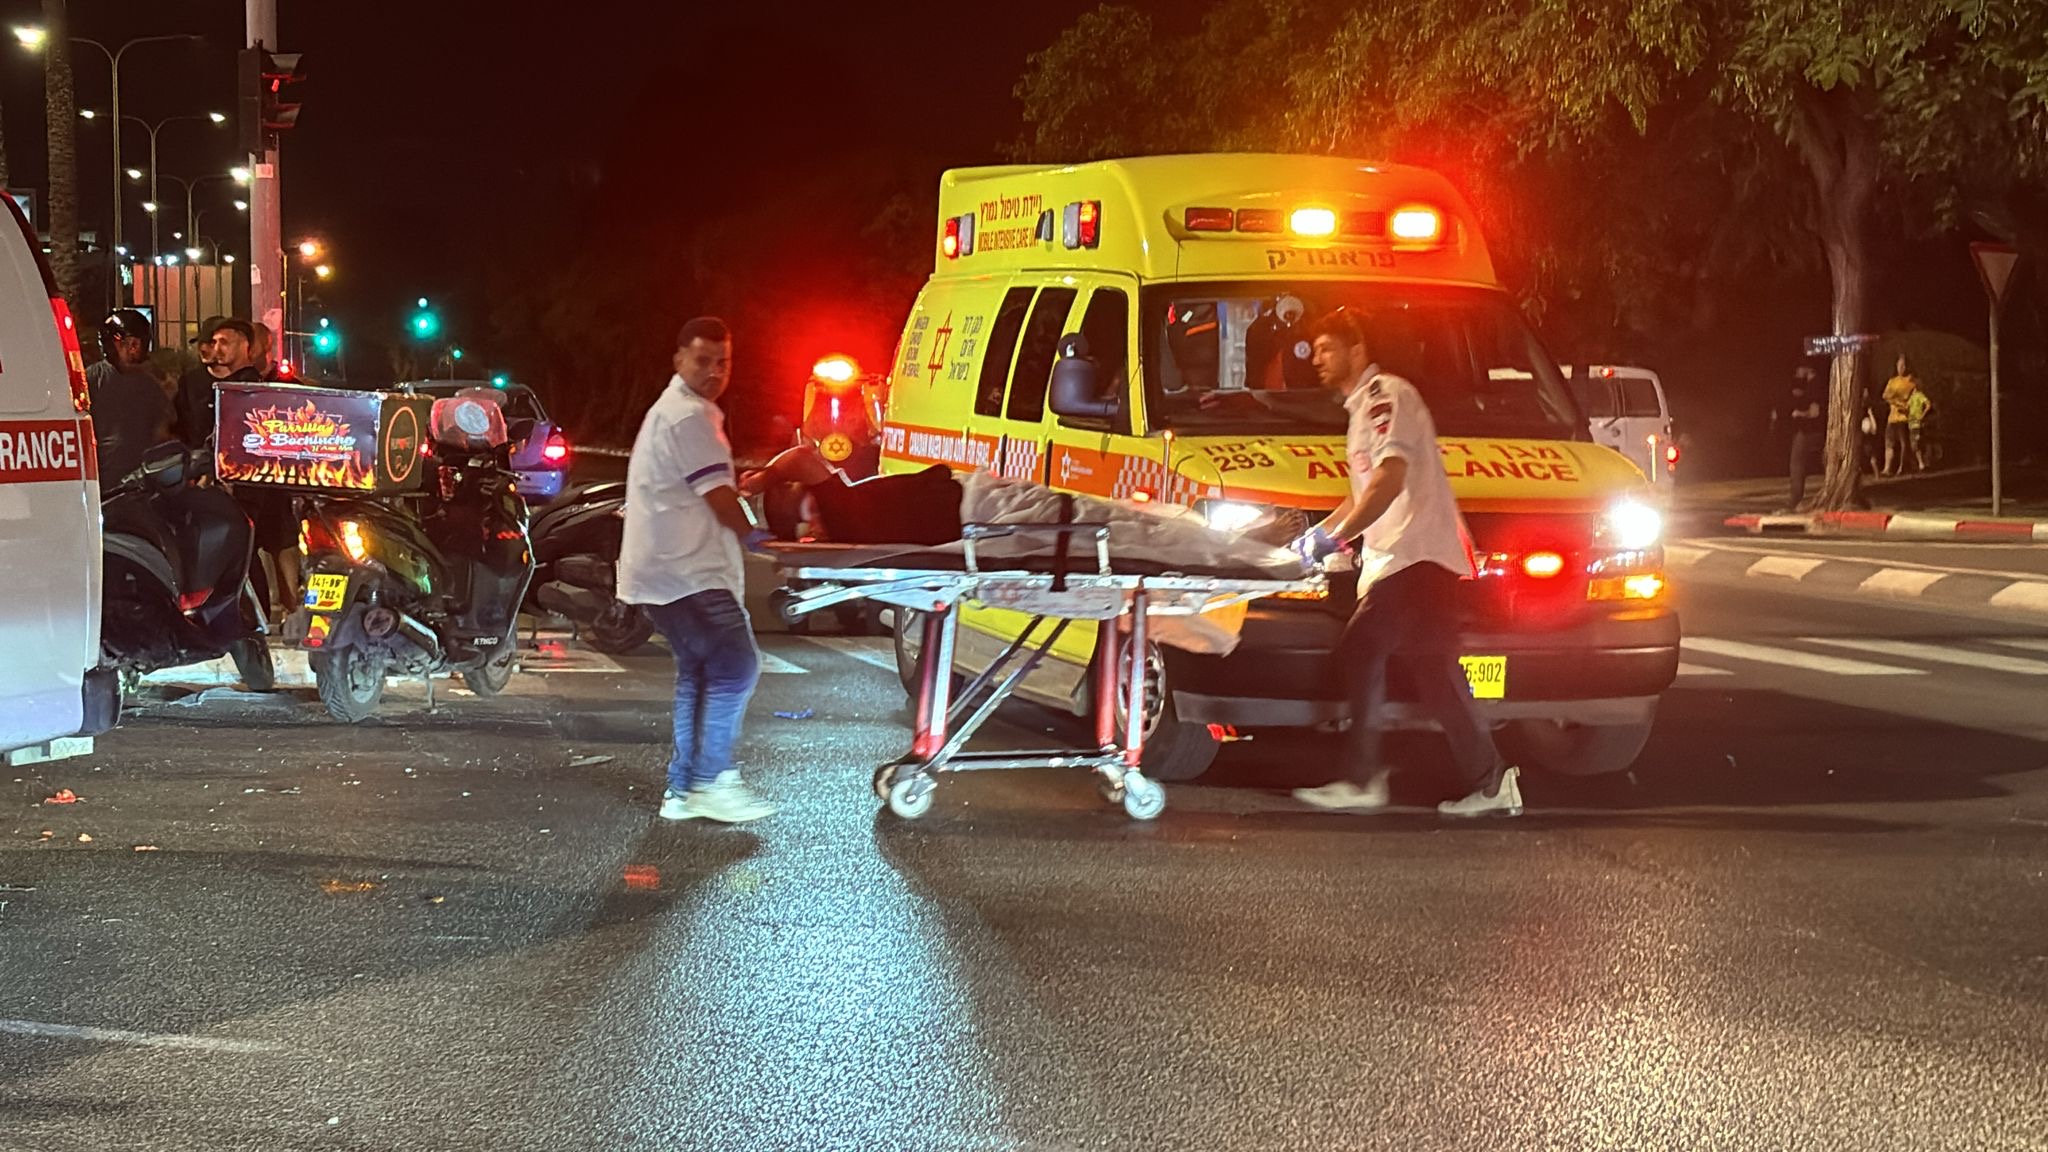 ثلاثة إصابات في حادث طرق مروع على مدخل مدينة يافا الشرقي